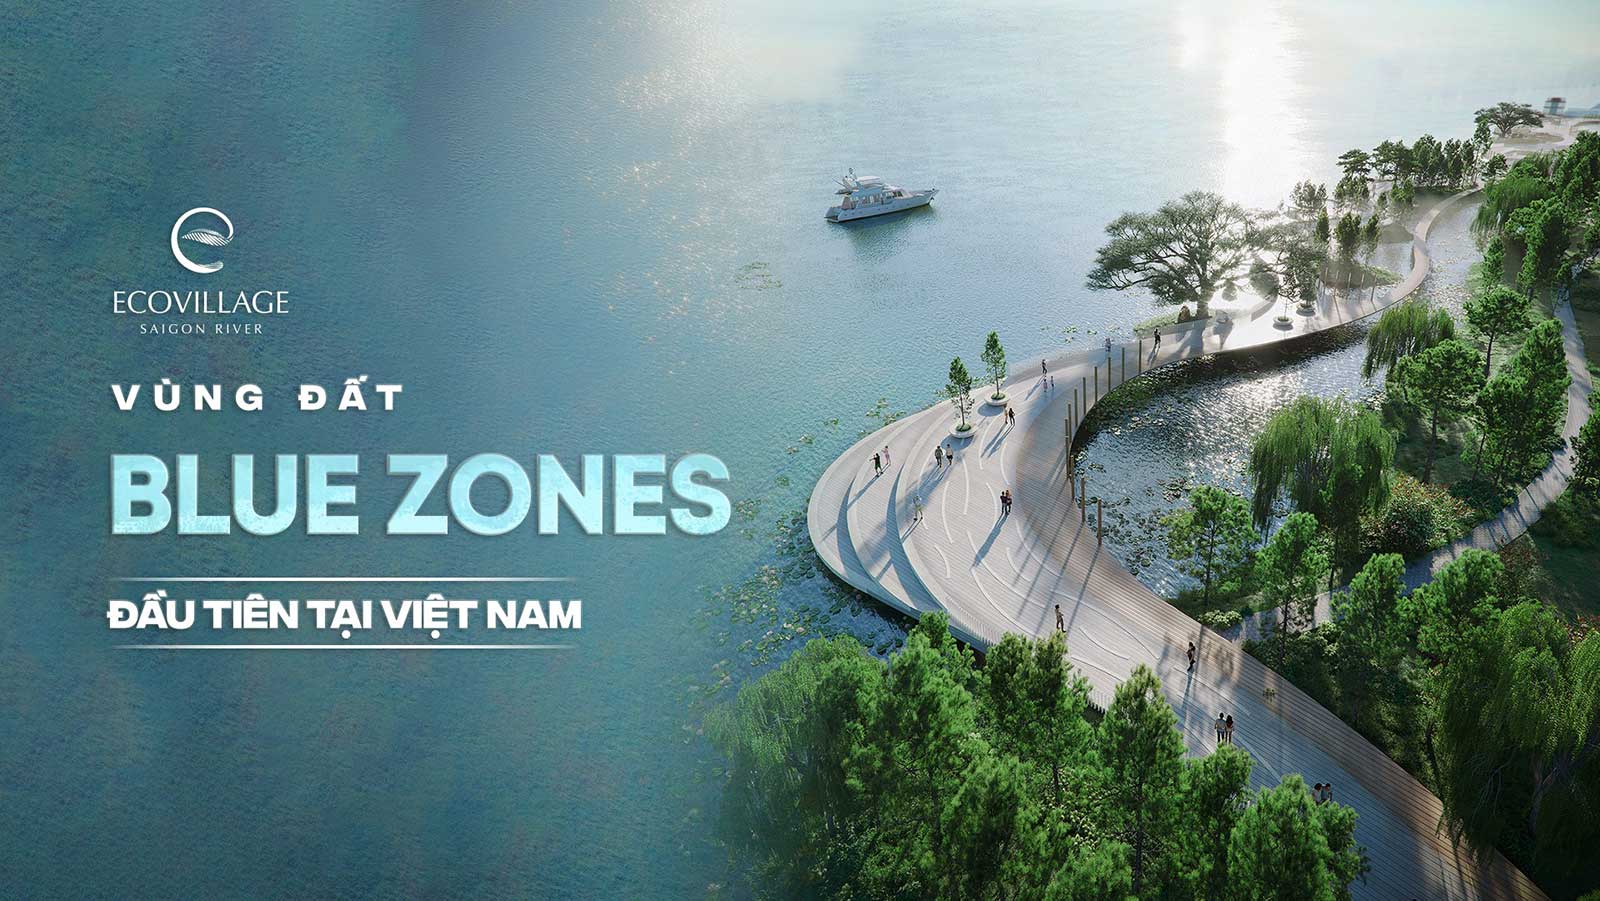 Bất động sản Blue Zones tiên phong tại Ecovillage Saigon River